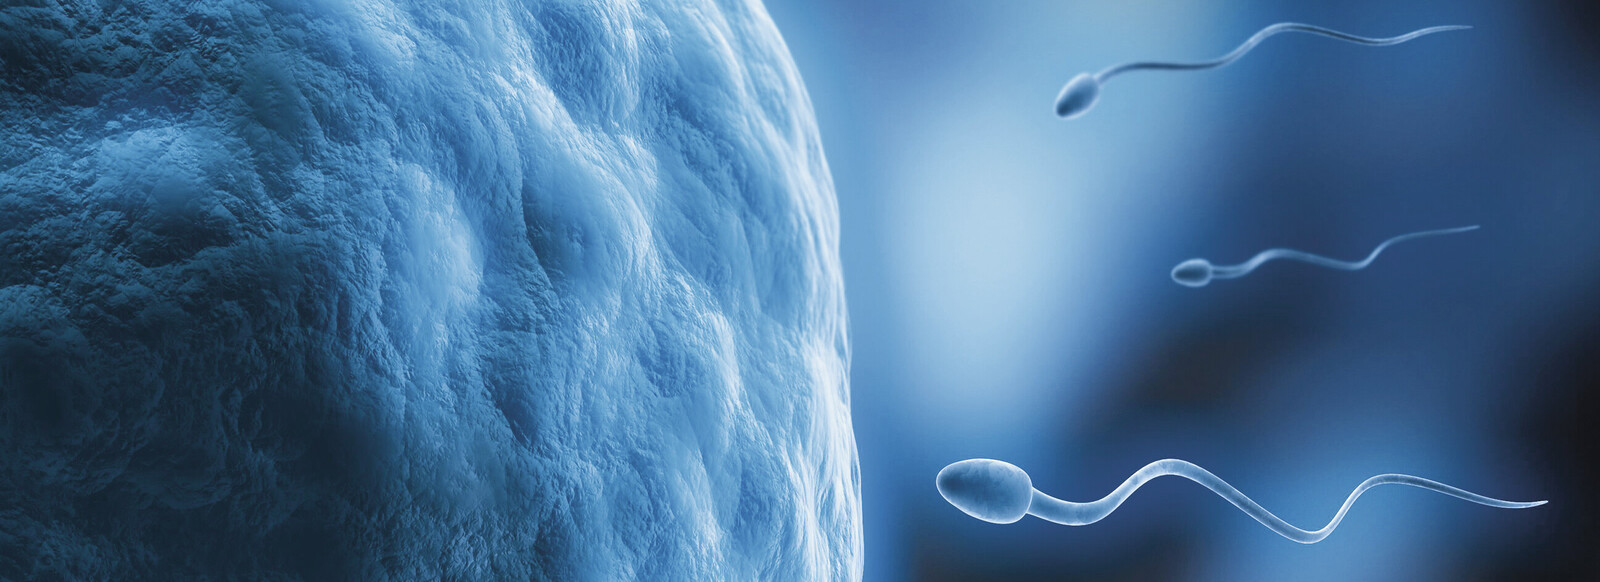 Sperma-Dilemma: Fruchtbarkeit der Männer in Gefahr 